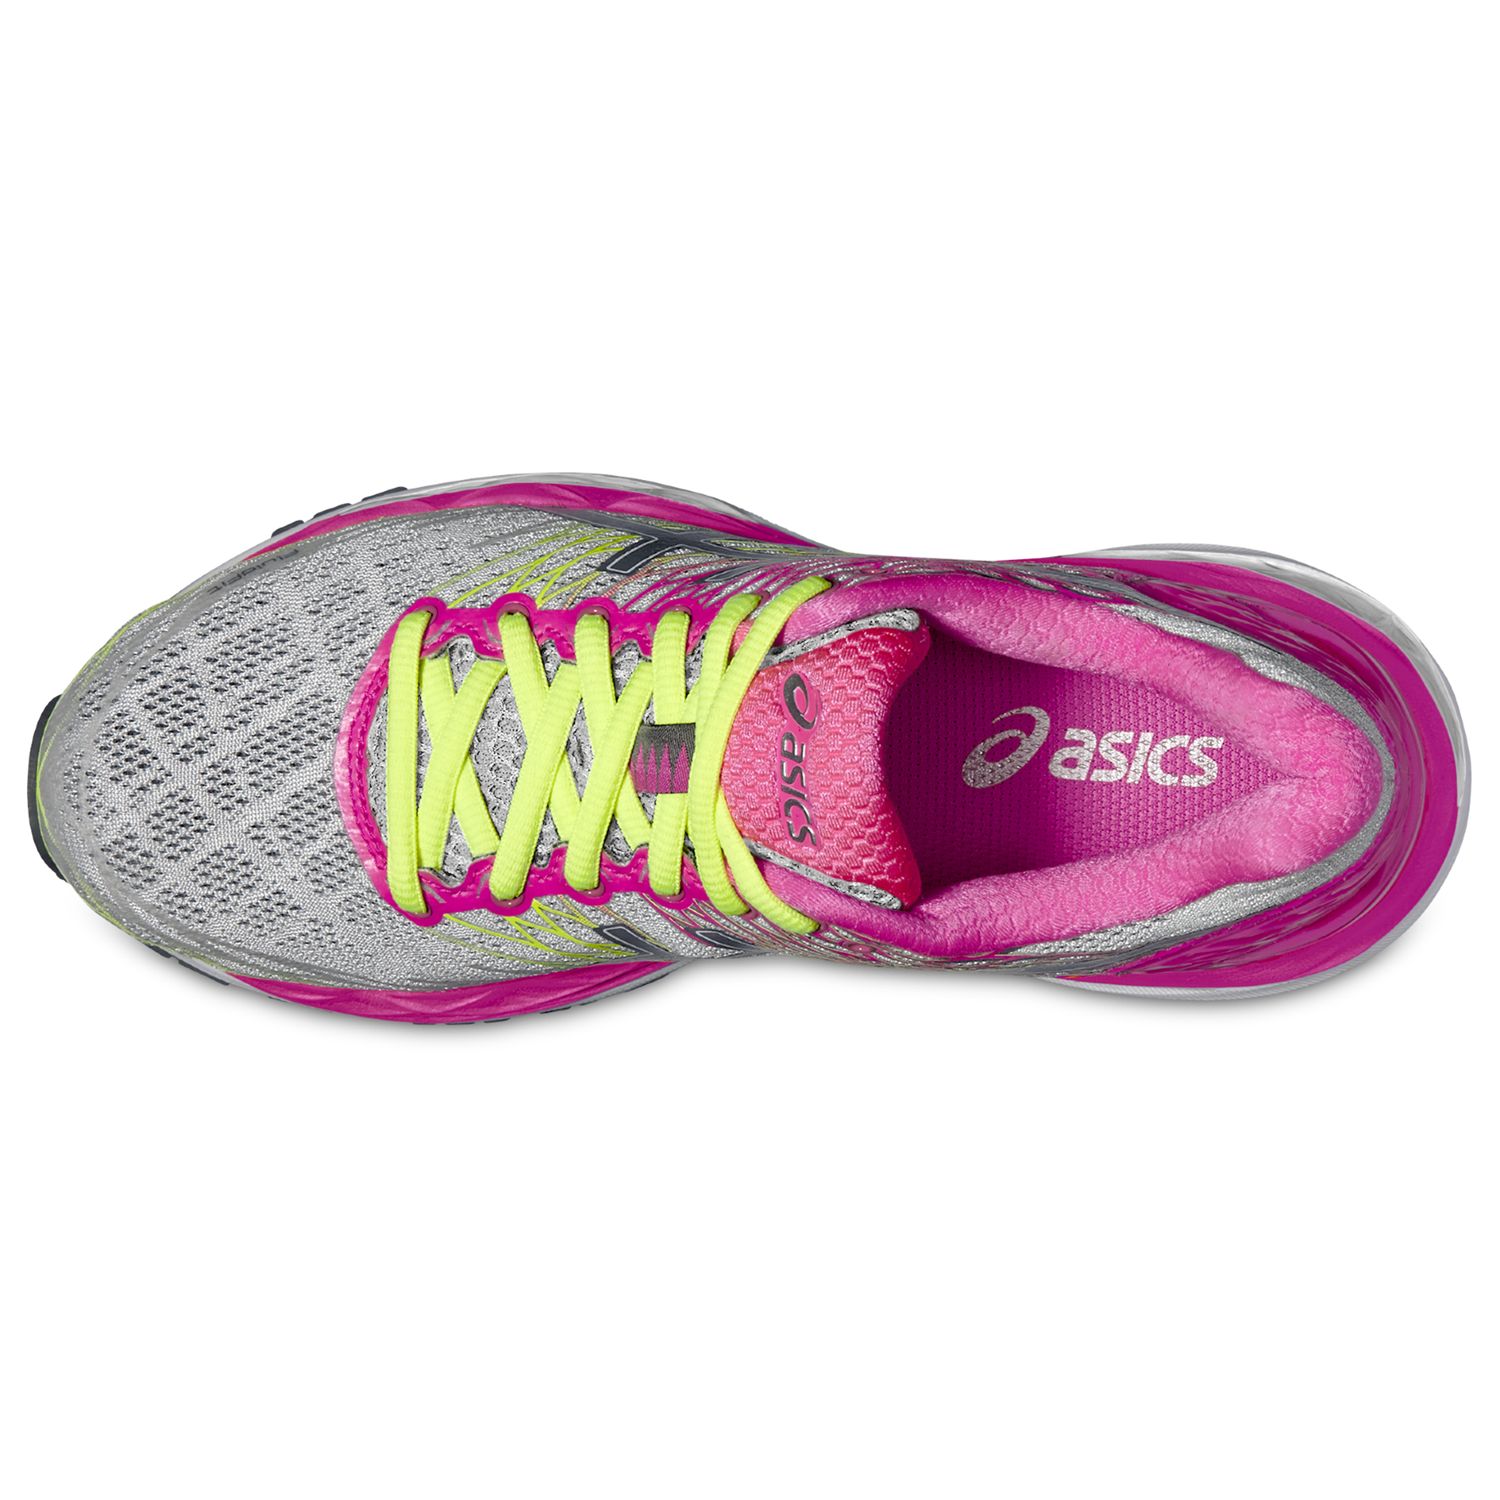 asics women's gel nimbus 18 running shoe